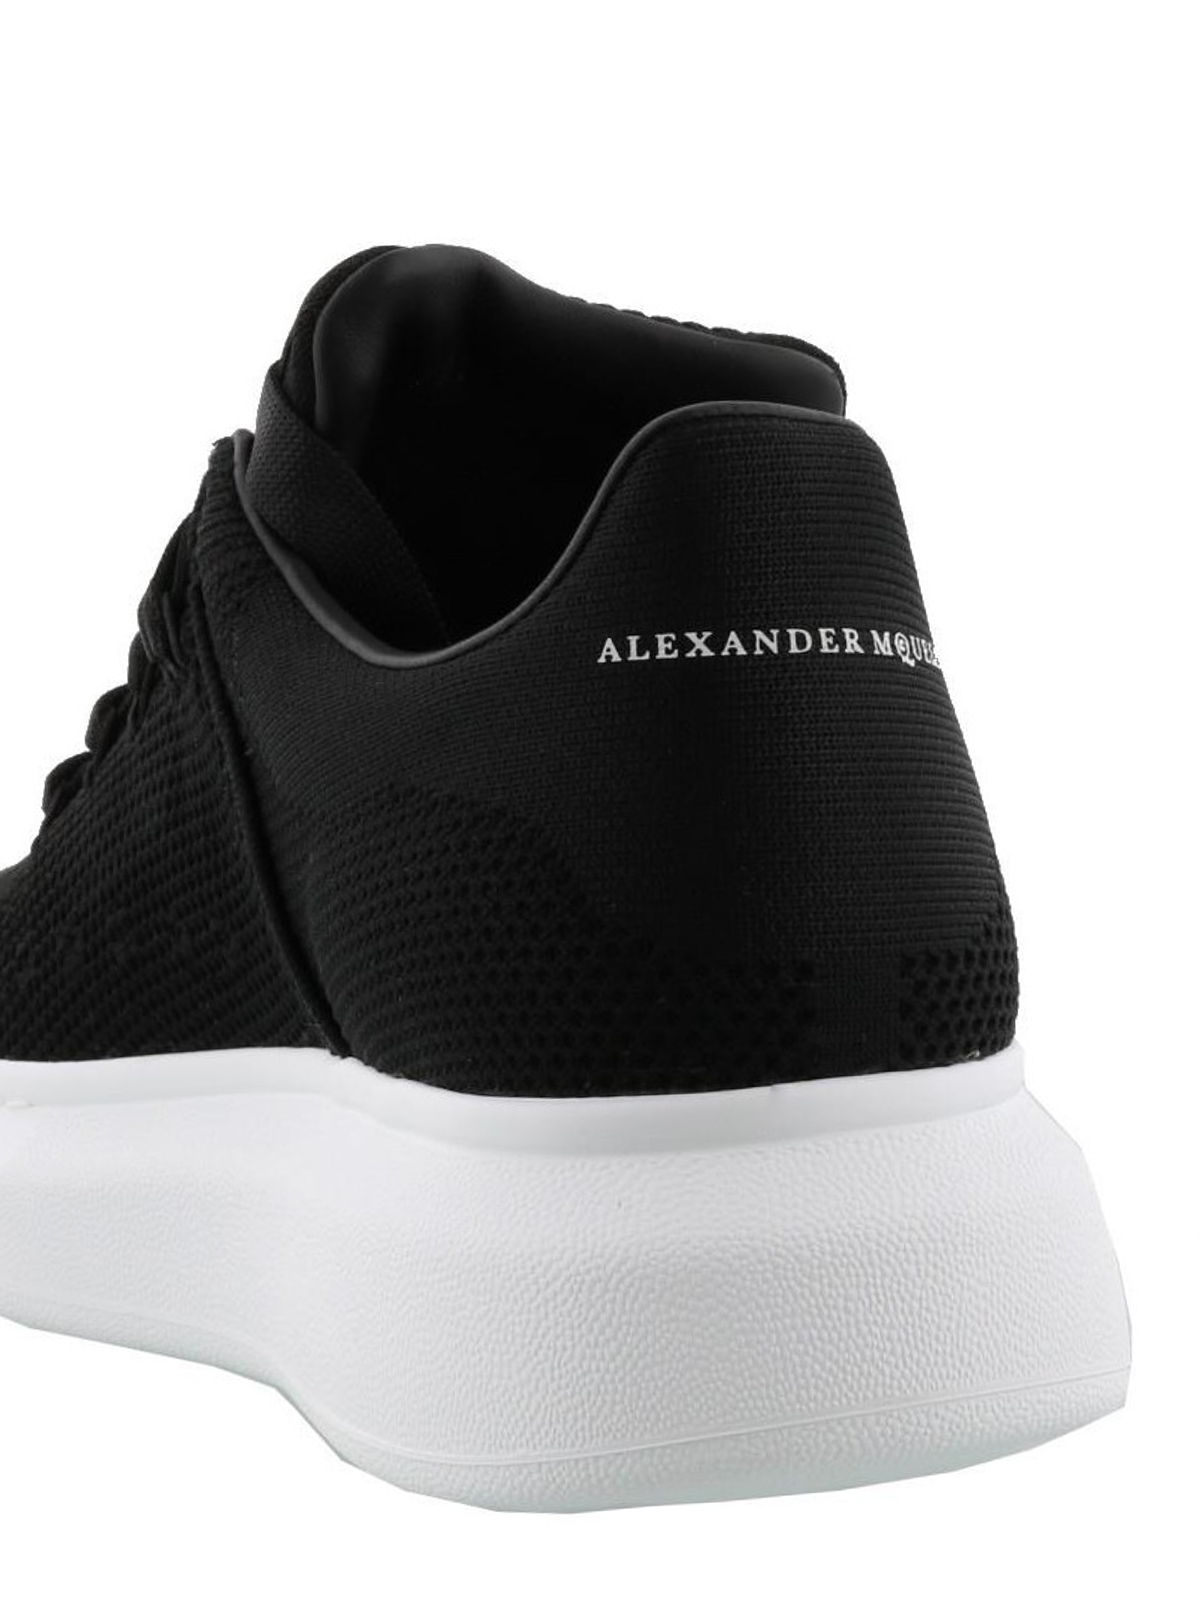 Sneakers Alexander Mcqueen - Sneaker Oversize in tessuto nero -  526197W4I901000